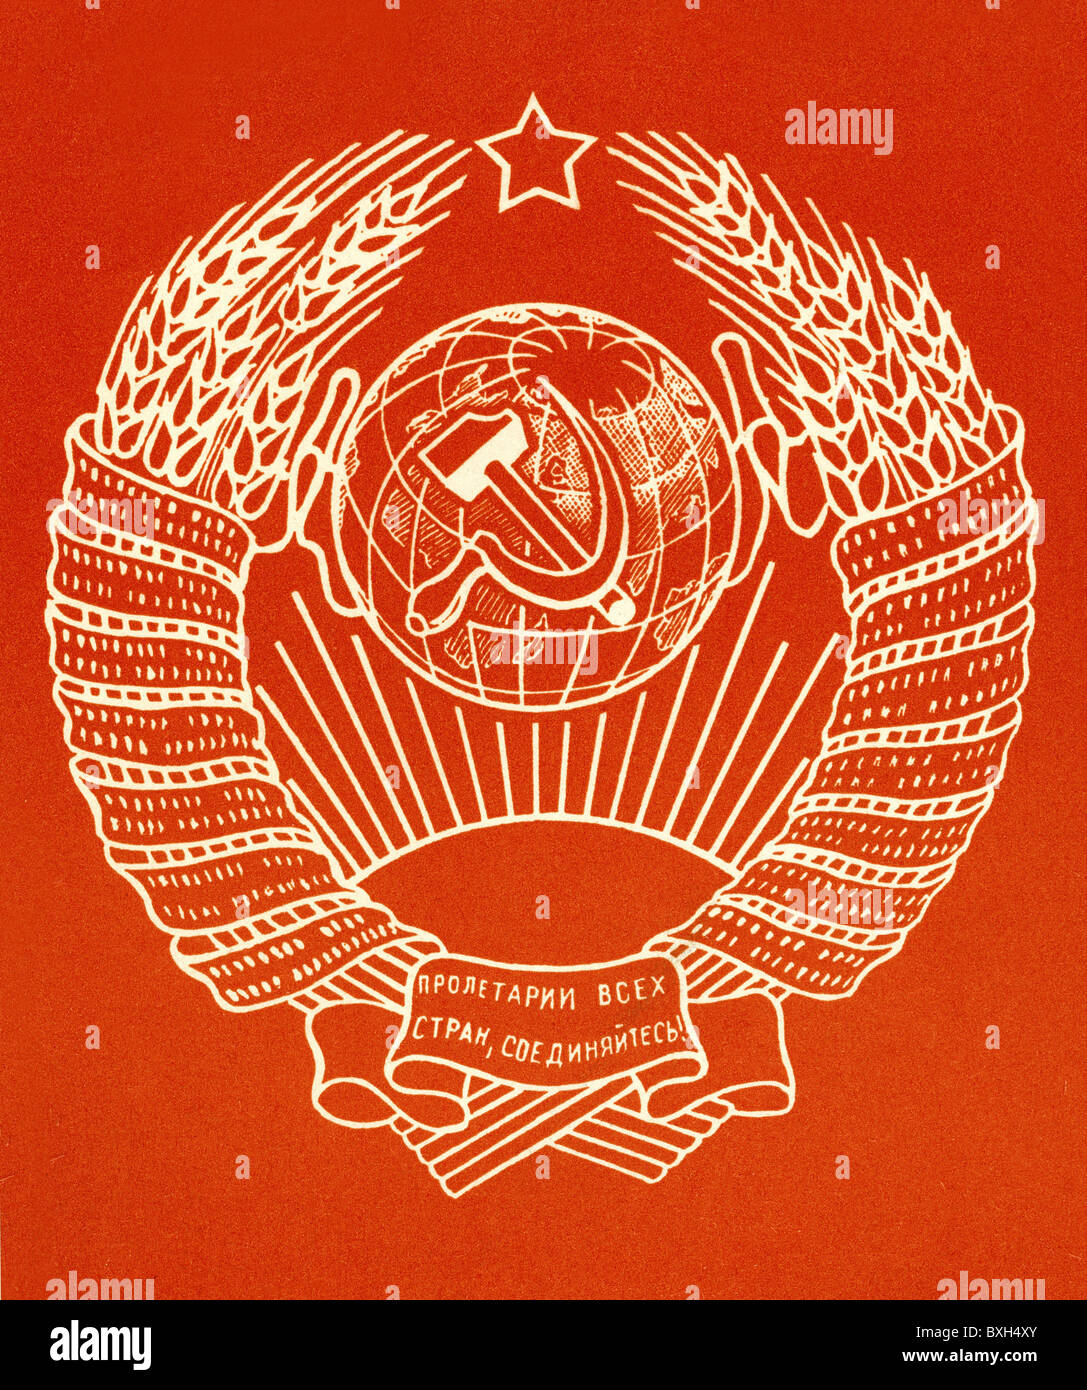 Symbole, Staatswappen, Union der Sozialistischen Sowjetrepubliken /UdSSR/, Sowjetunion, Emblem, Russland, 1958, Zusatzrechte-Clearences-nicht vorhanden Stockfoto